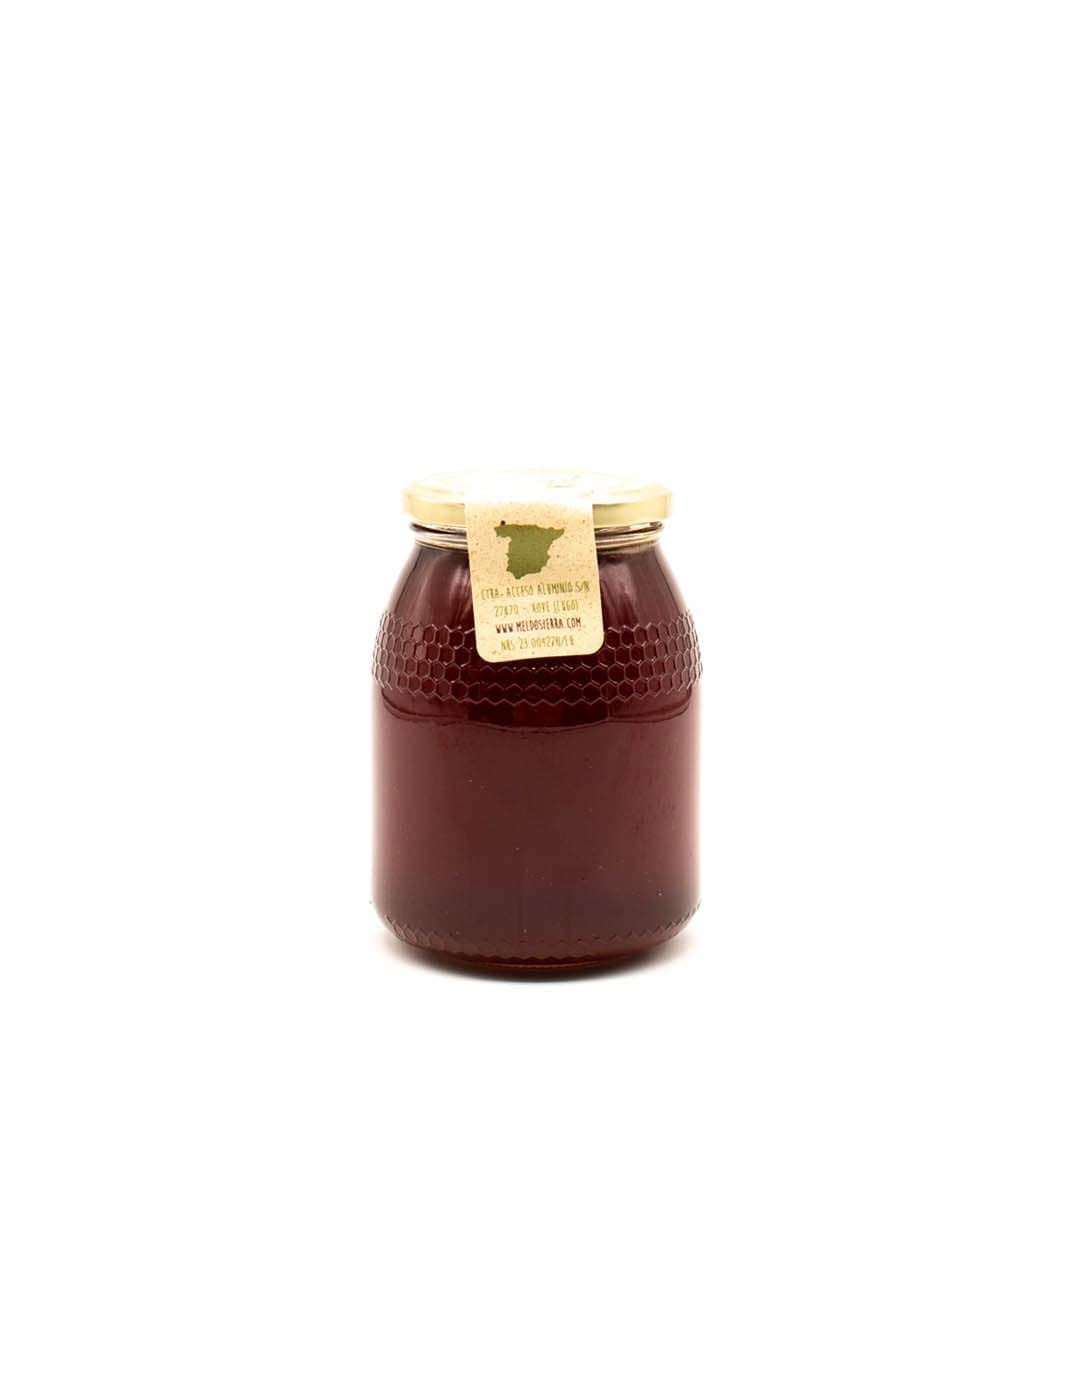 Mel Do Sierra 1 kg ( miel artesanal ) - Imagen 1